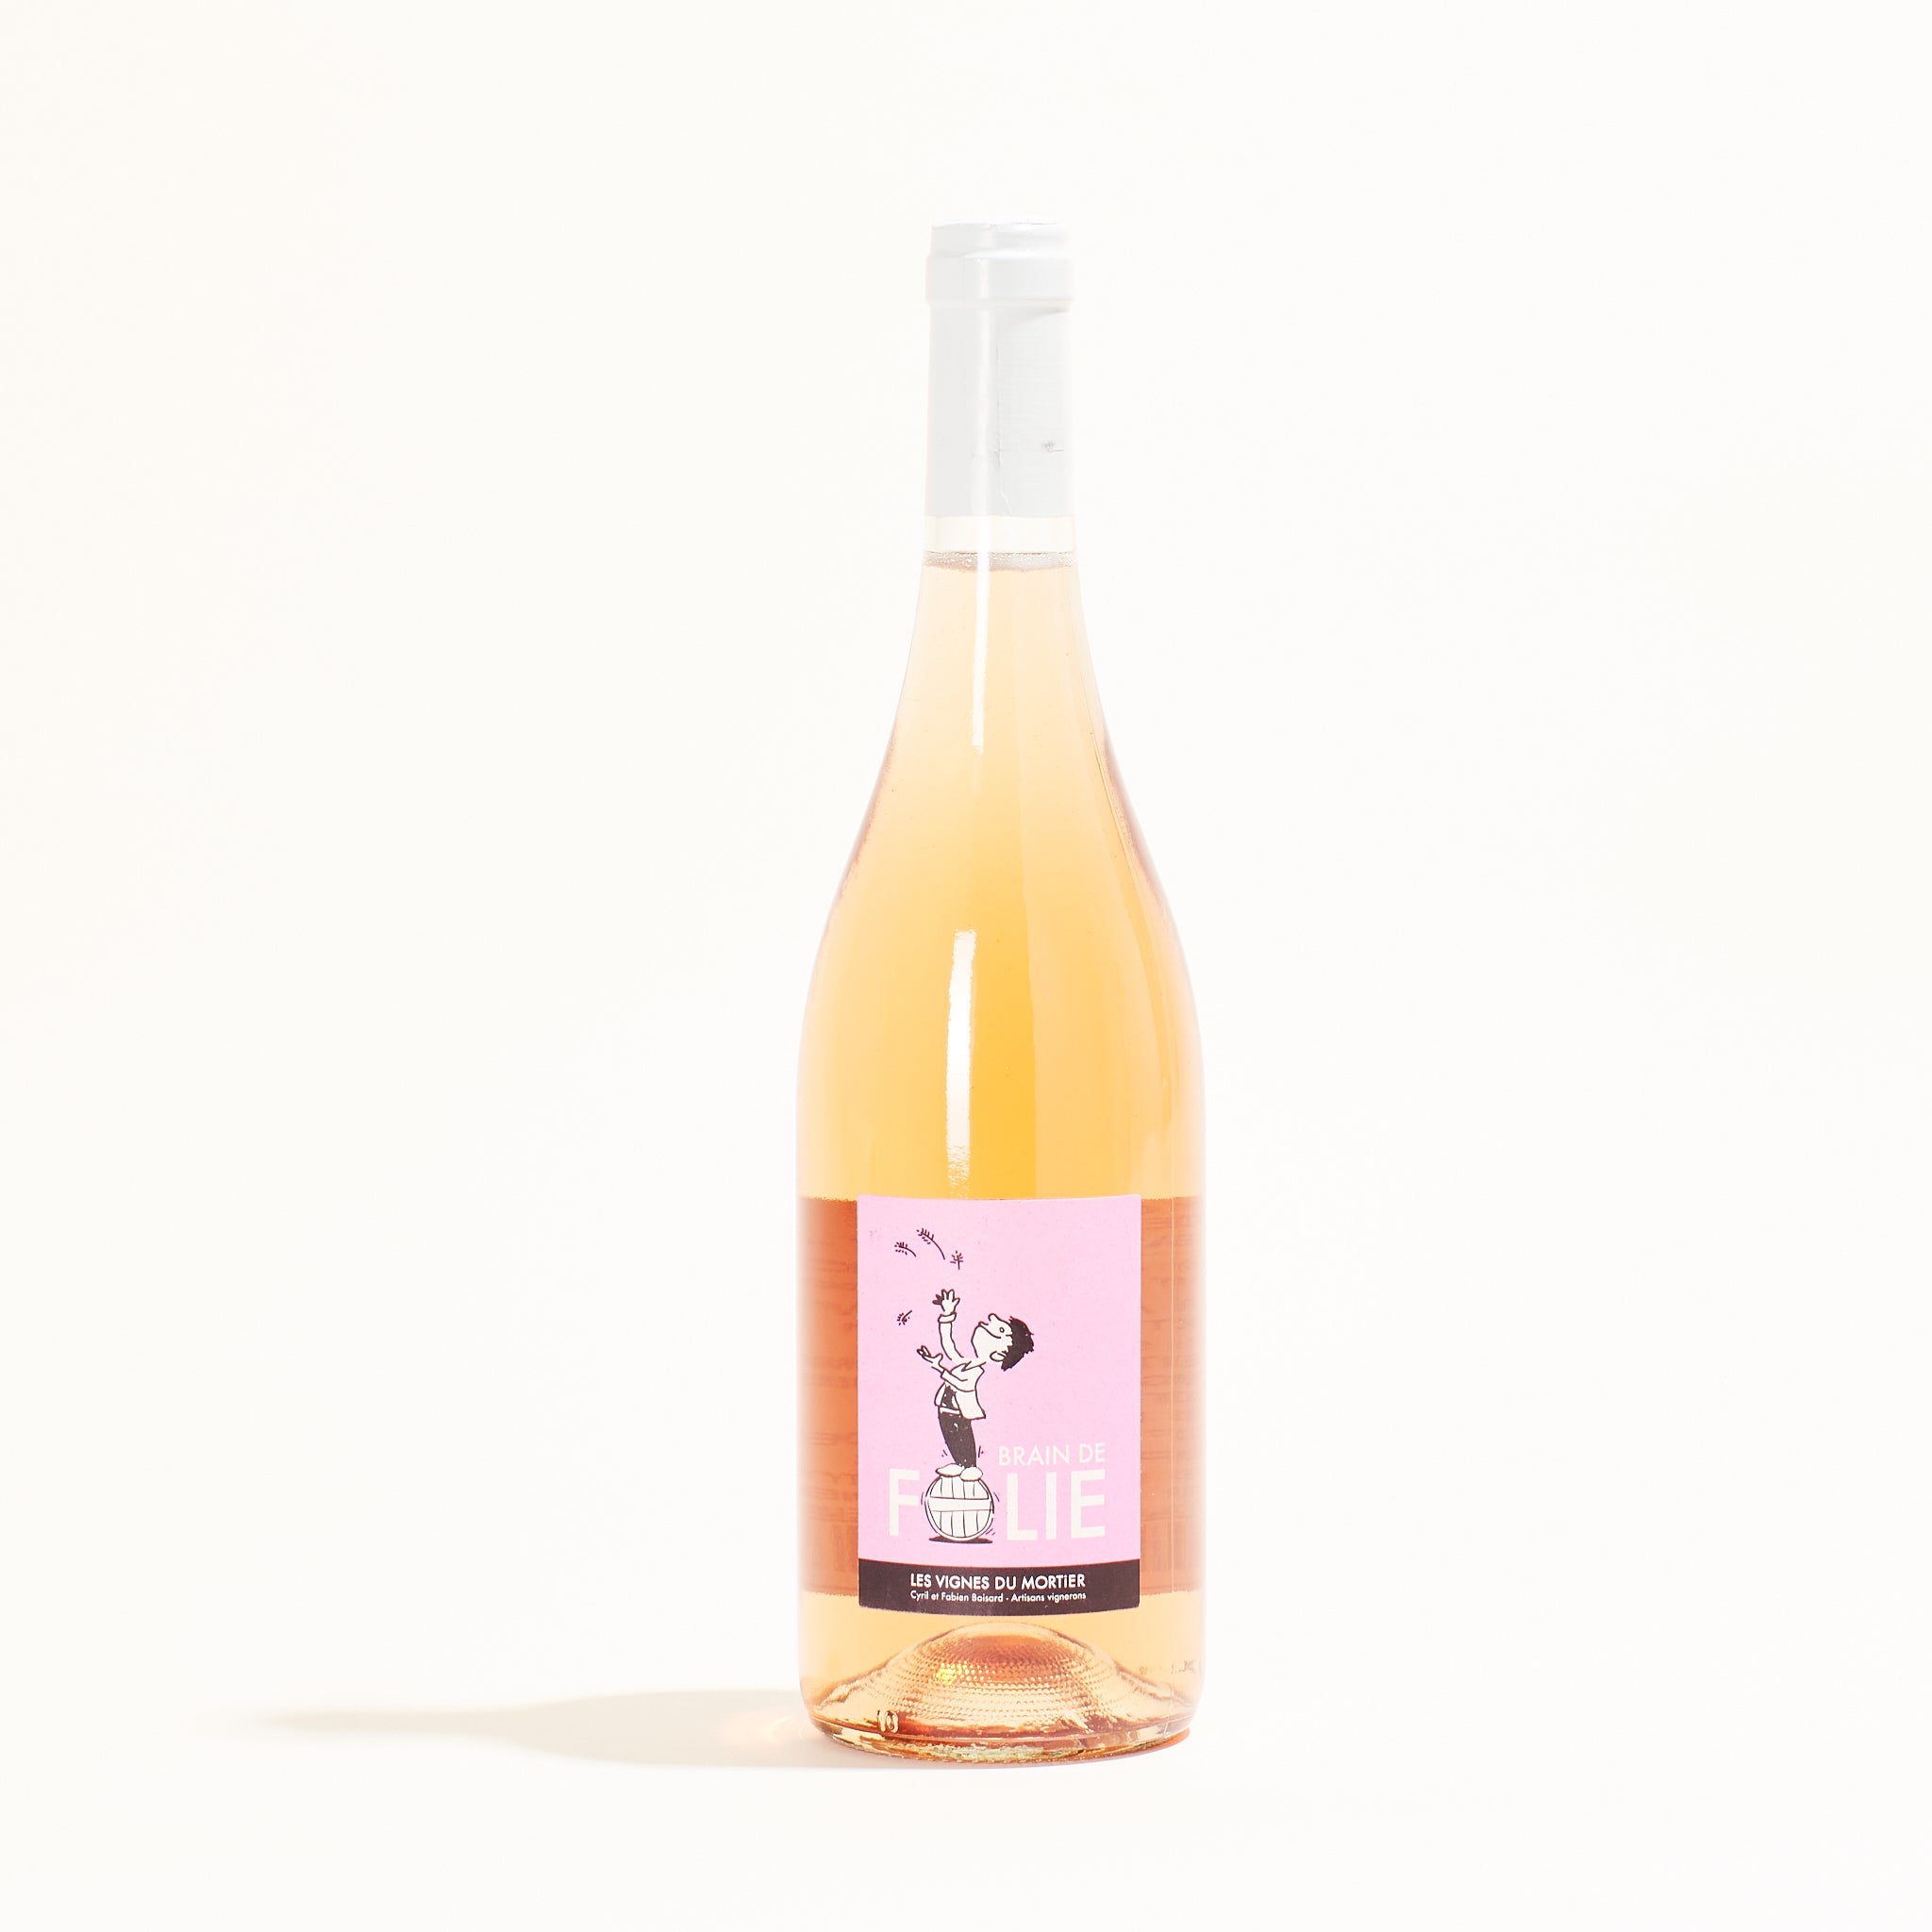 Mortier Brain de Folie Rosé natural Rosé wine Loire France front label